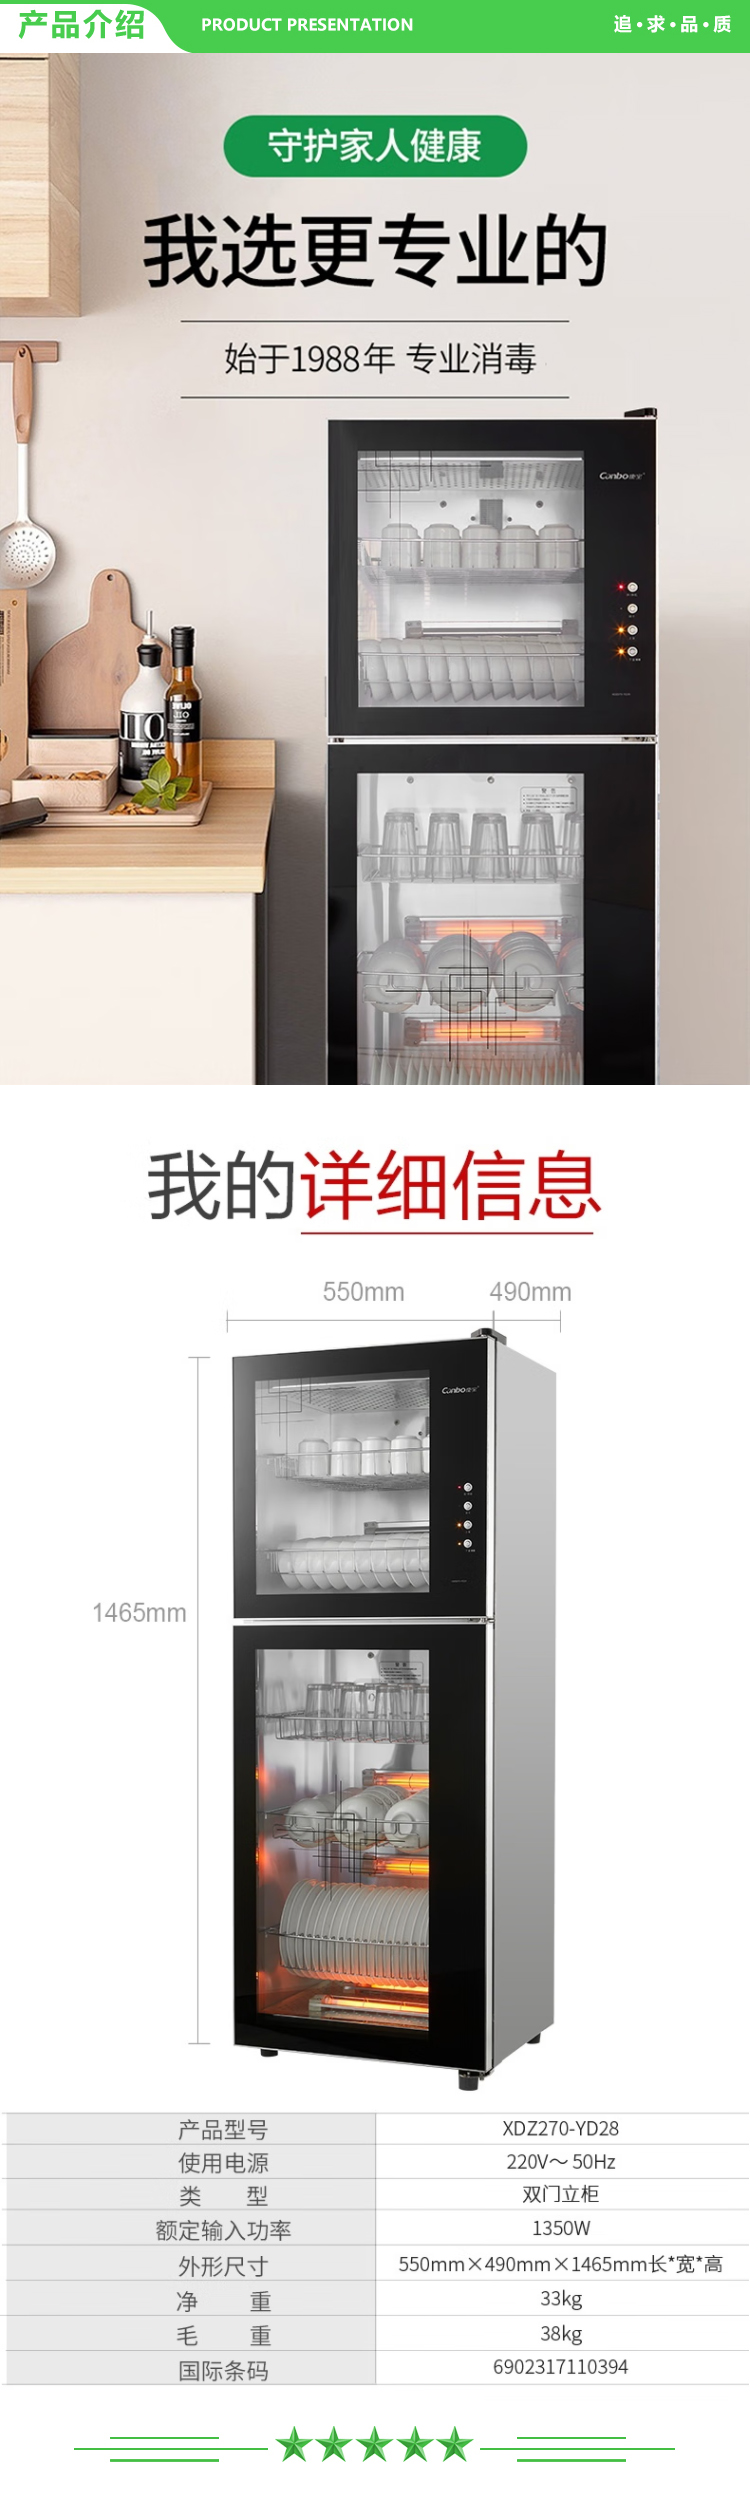 康宝 Canbo YD28 320L 消毒柜家用 厨房碗筷柜商用 270L 320L二星级高温消毒柜  .jpg